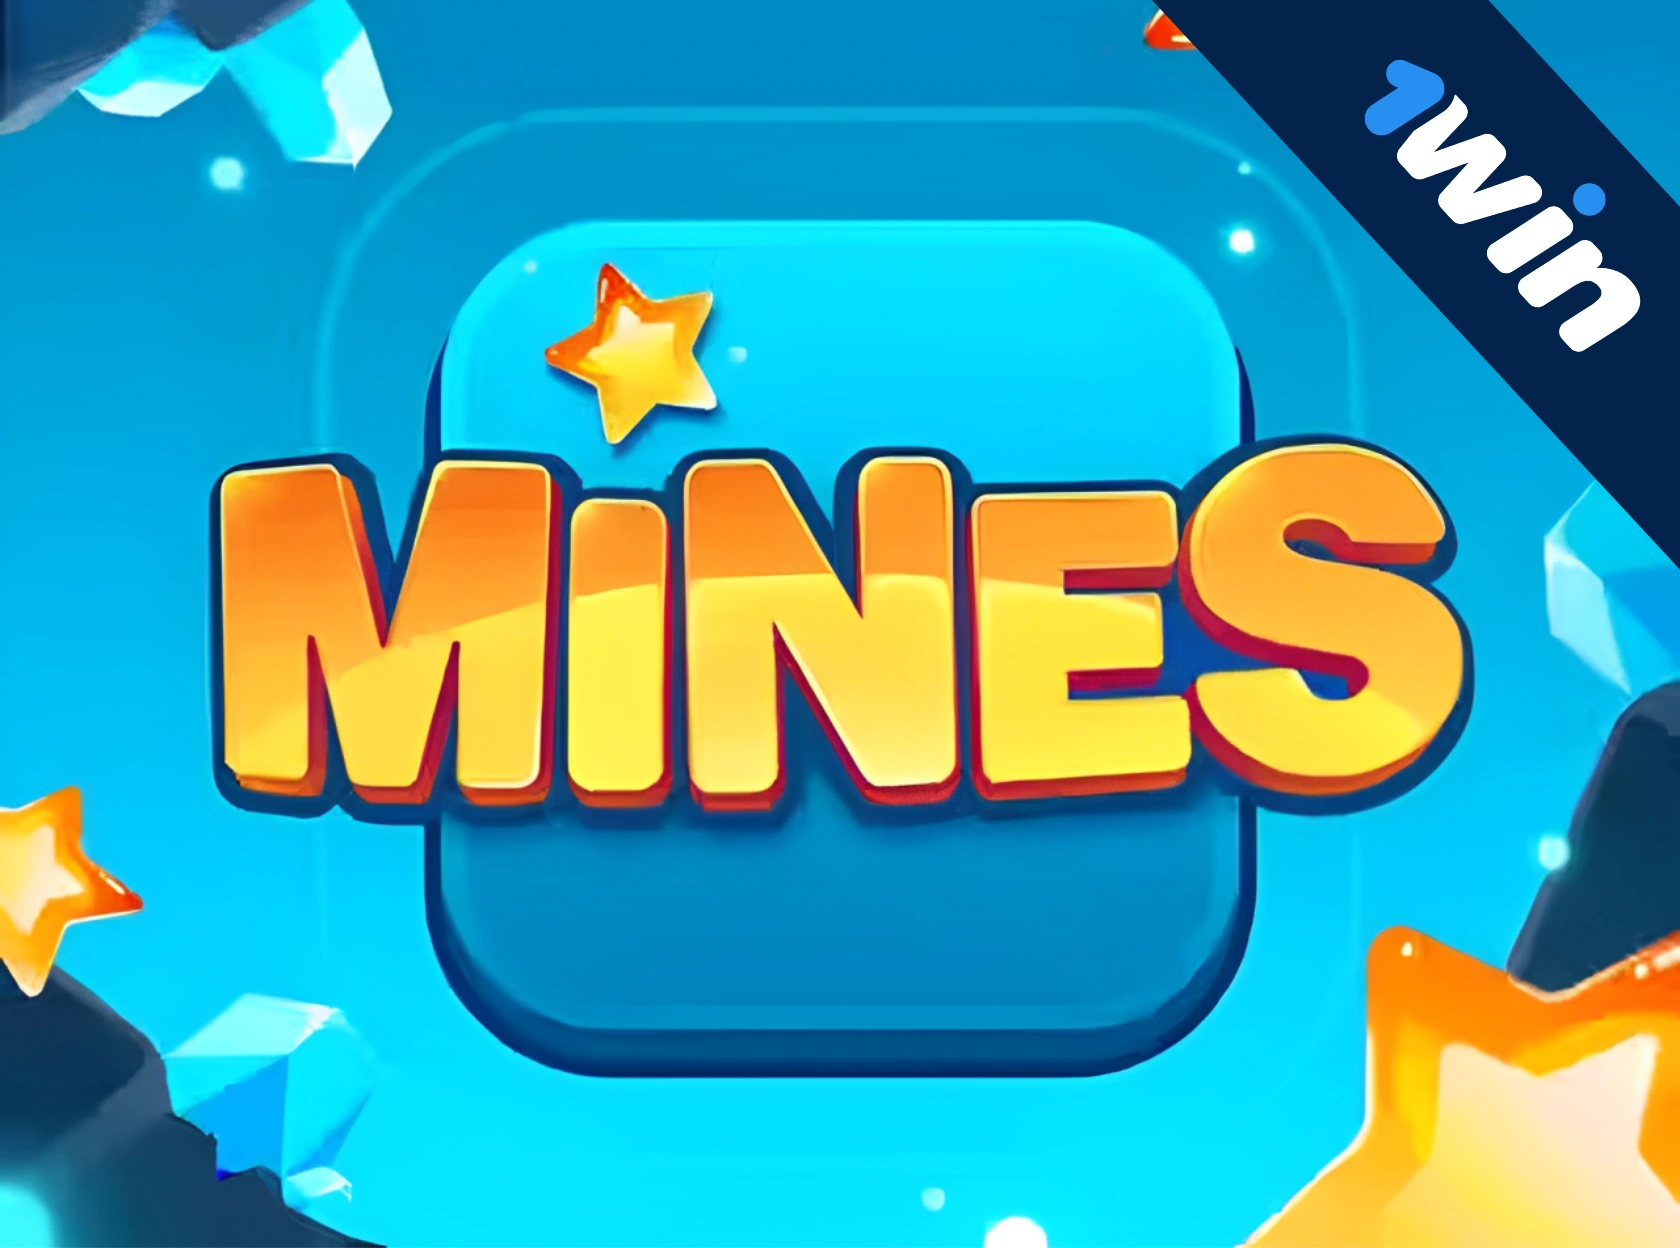 1win Mines - игра на деньги играть онлайн